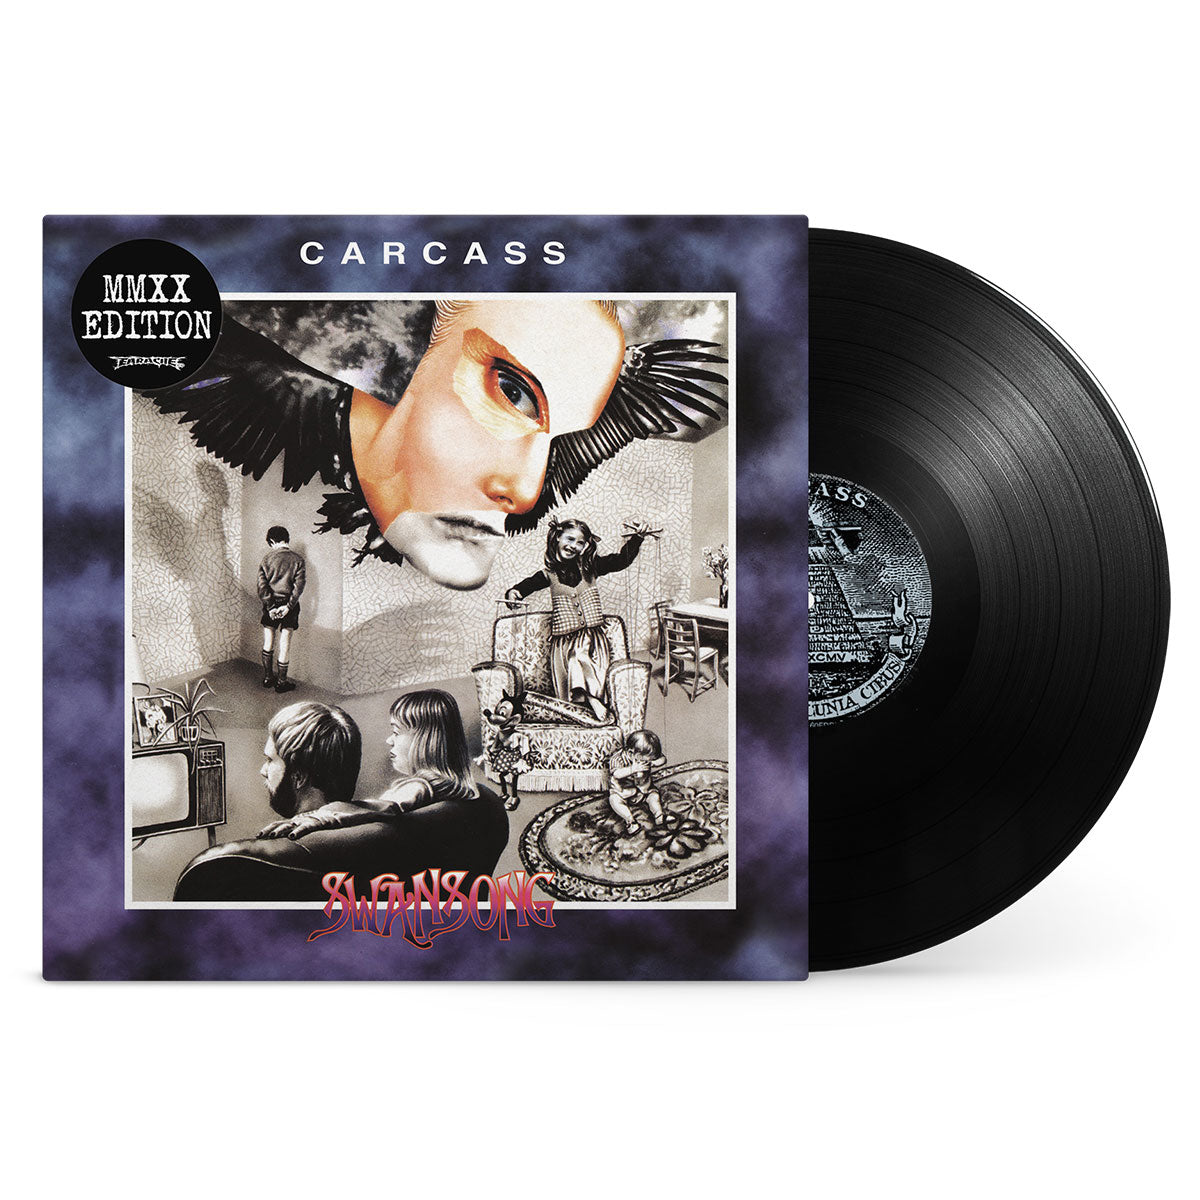 Carcass "Swansong MMXX" FDR Black Vinyl